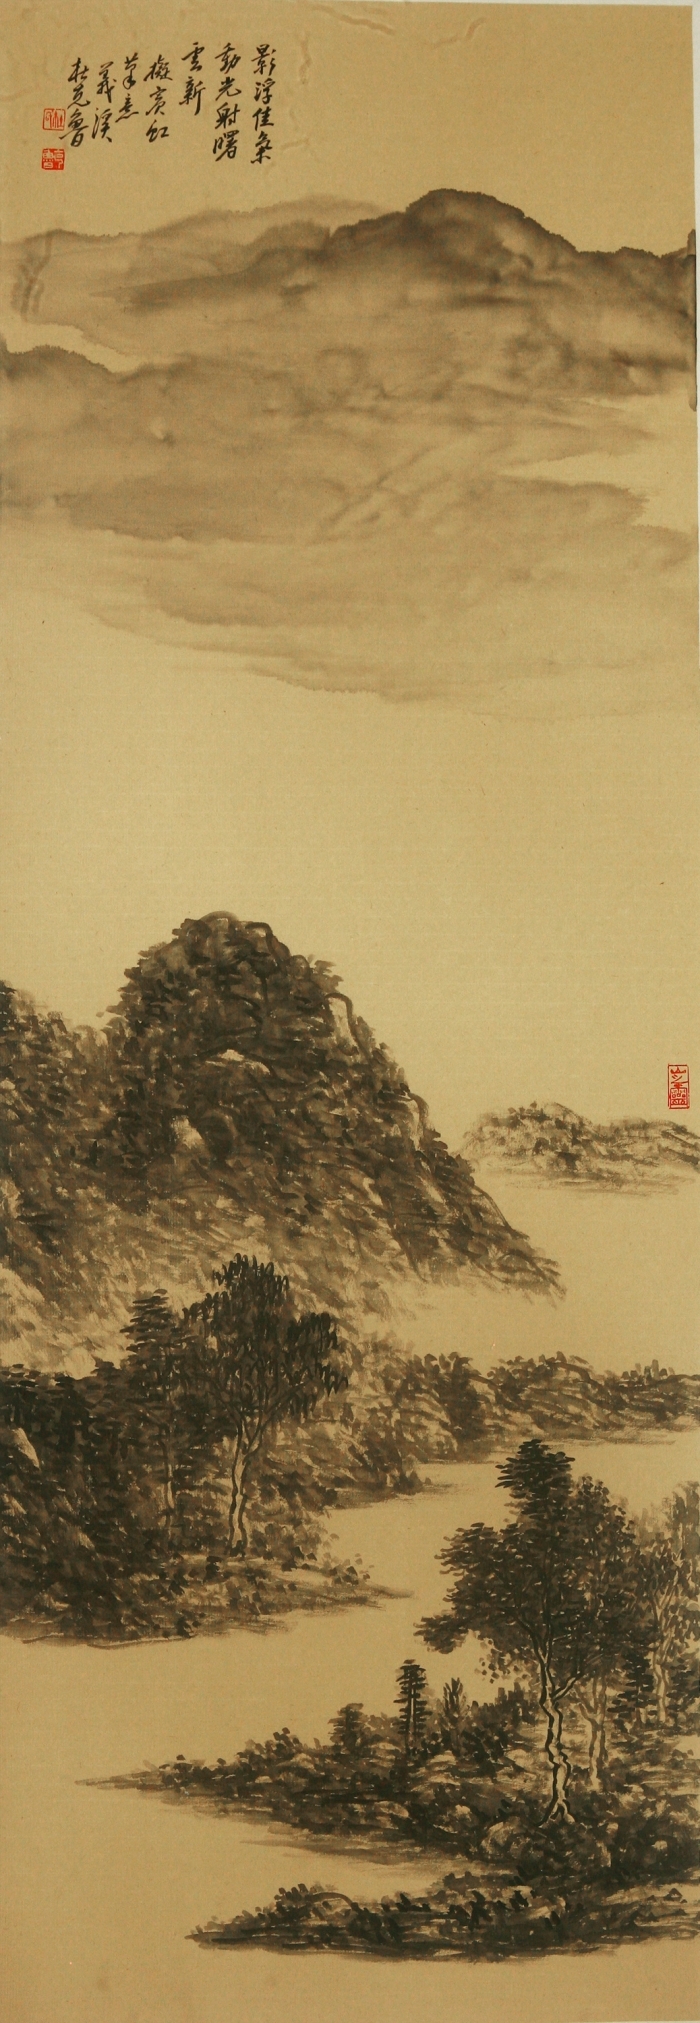 La galerie Fenghetang Art Chinois - L'utilisation actuelle de l'ancienneté 5